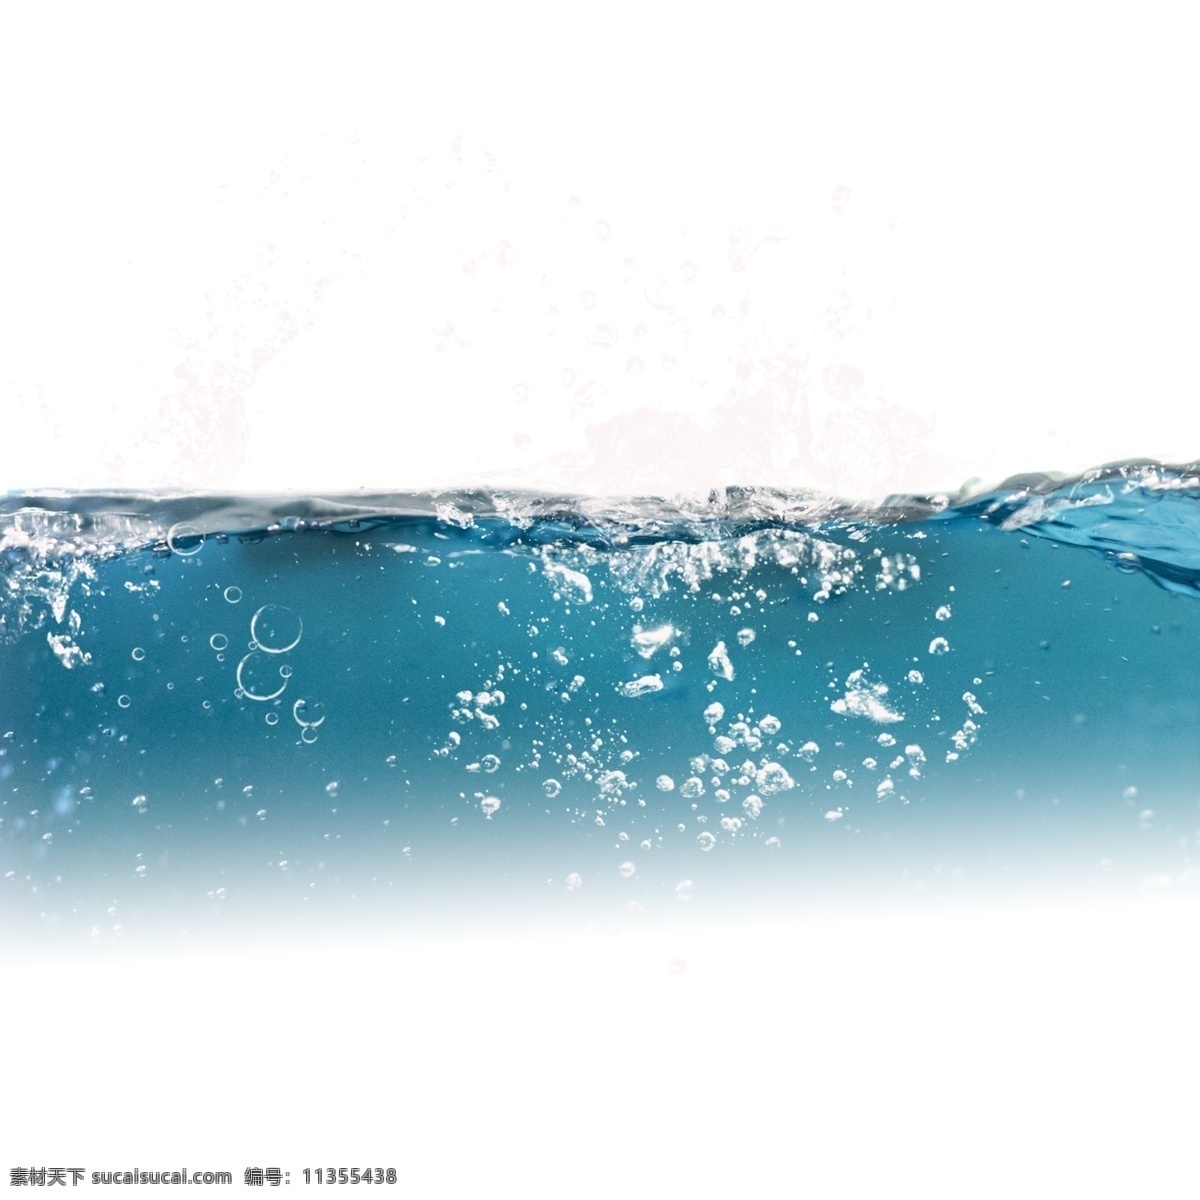 波浪 蓝色 水花 元素 水珠 水滴 水 泼水节 水波纹 动感 动感水 动感水浪 动感水纹 蓝色水